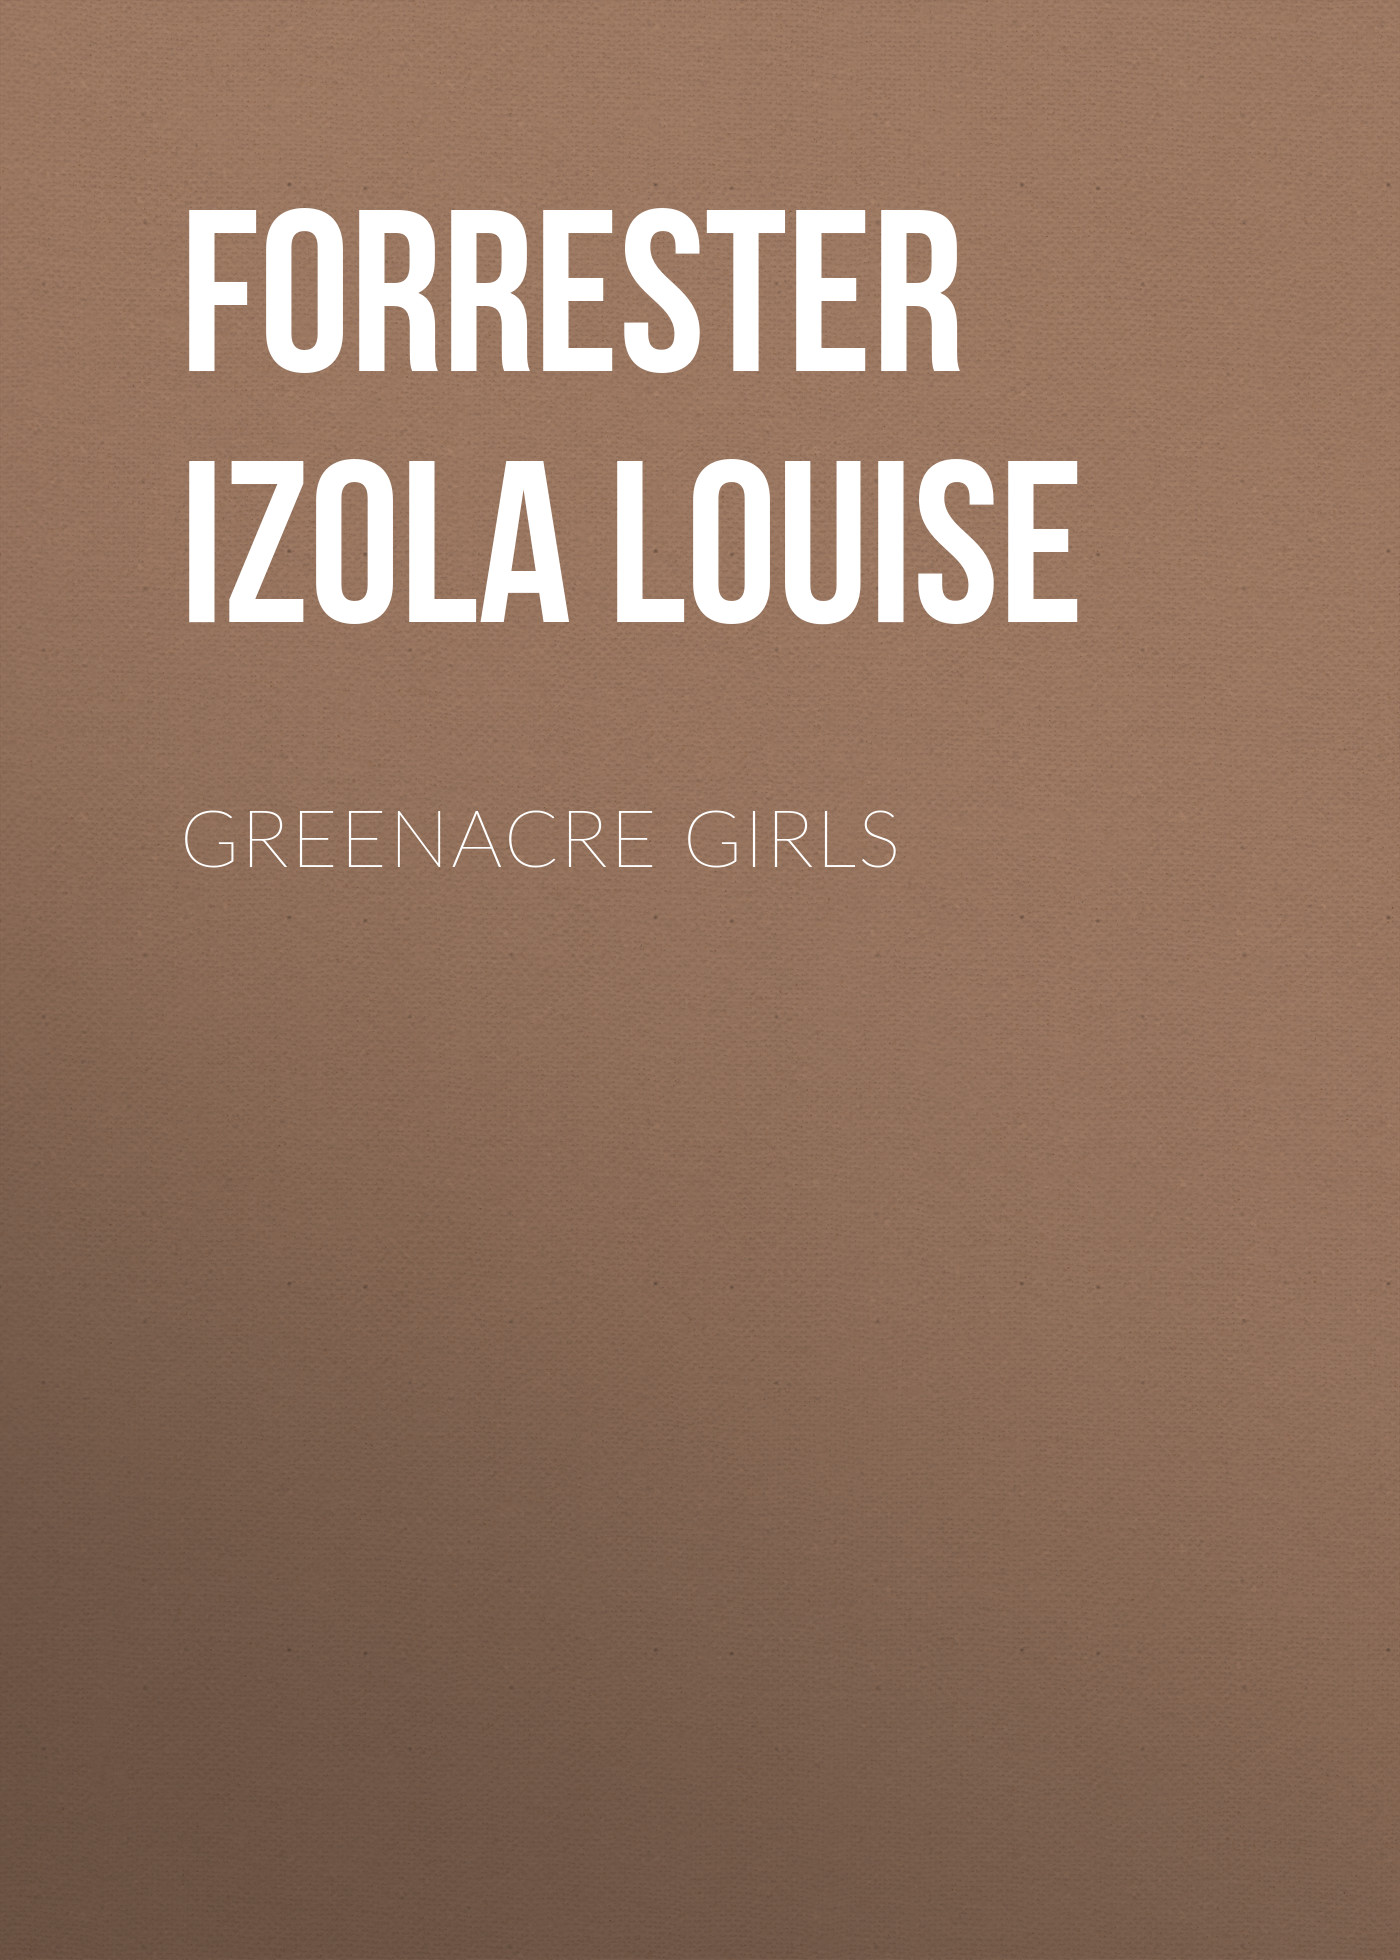 Книга Greenacre Girls из серии , созданная Izola Forrester, может относится к жанру Зарубежная старинная литература, Зарубежная классика. Стоимость электронной книги Greenacre Girls с идентификатором 24729137 составляет 0 руб.